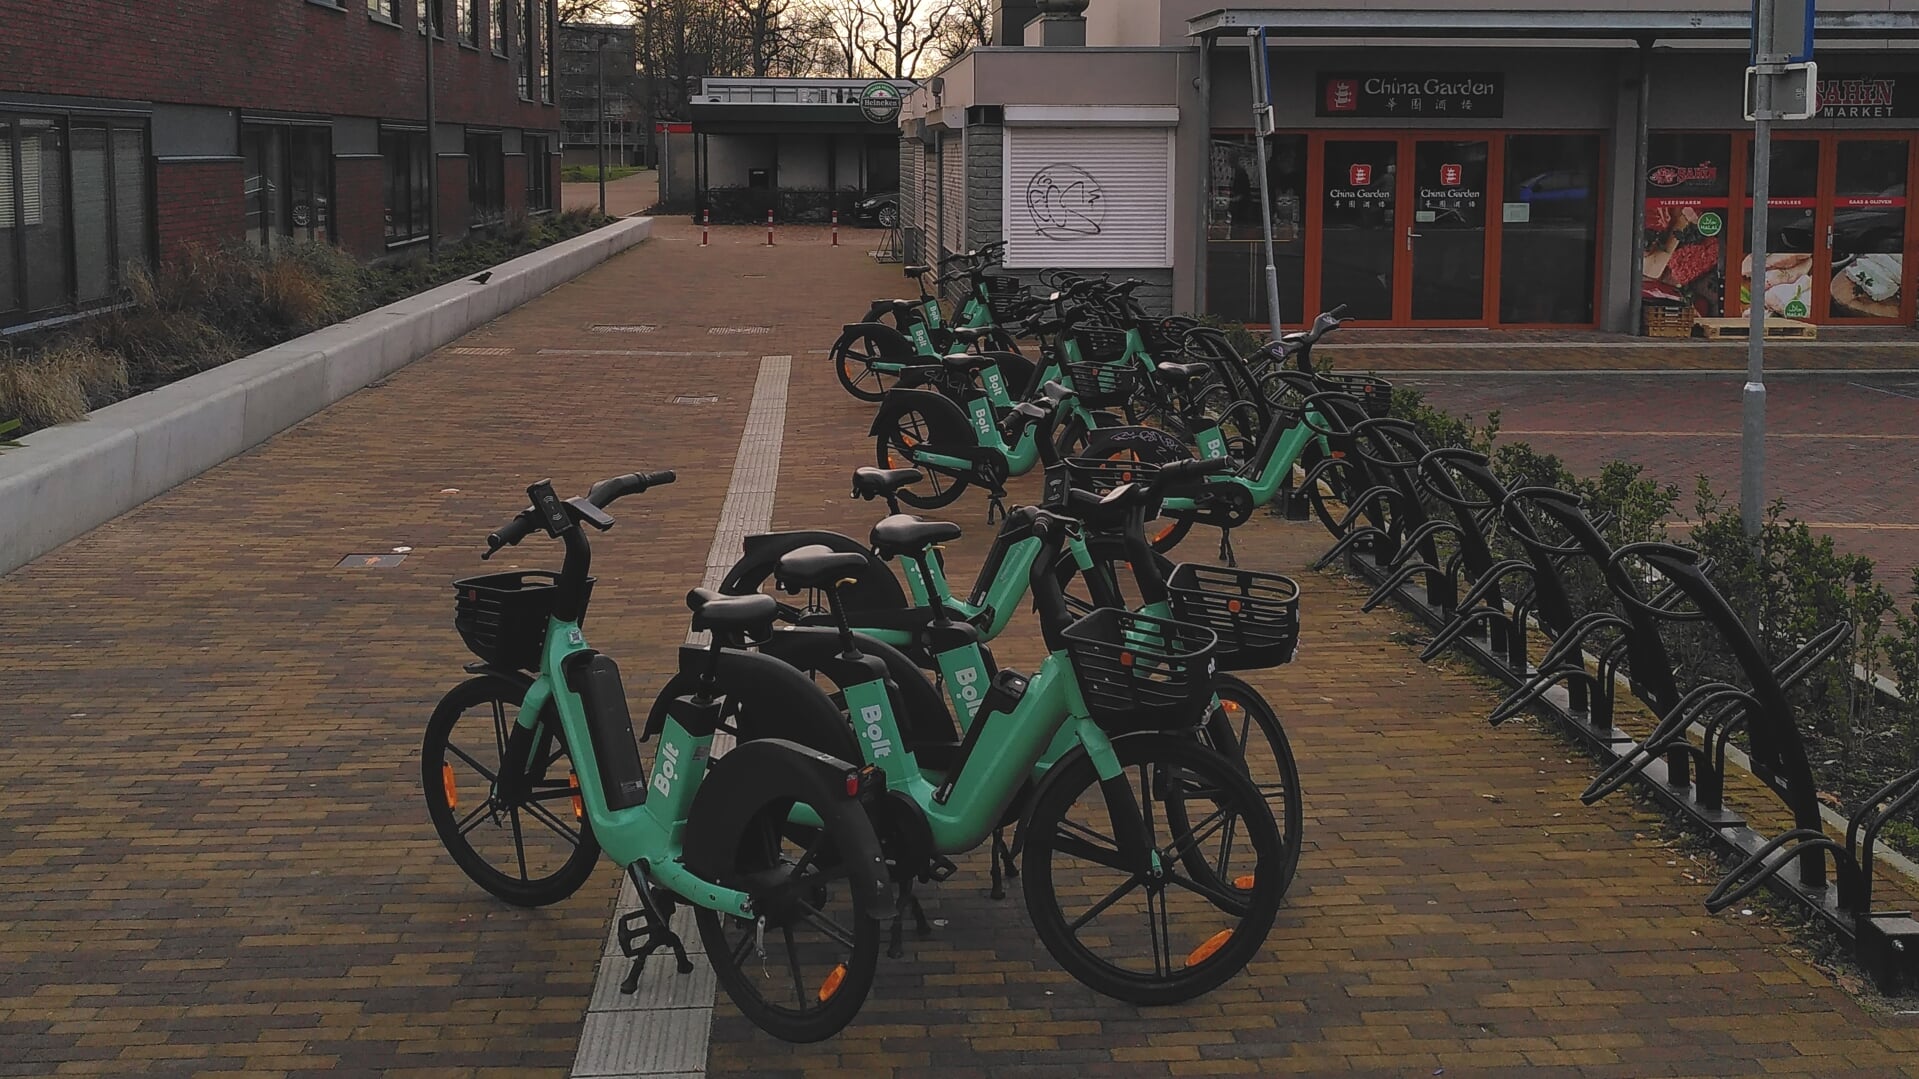 Deelscooters bezetten fietsparkeerplaats nabij het zwembad Dukenburg.